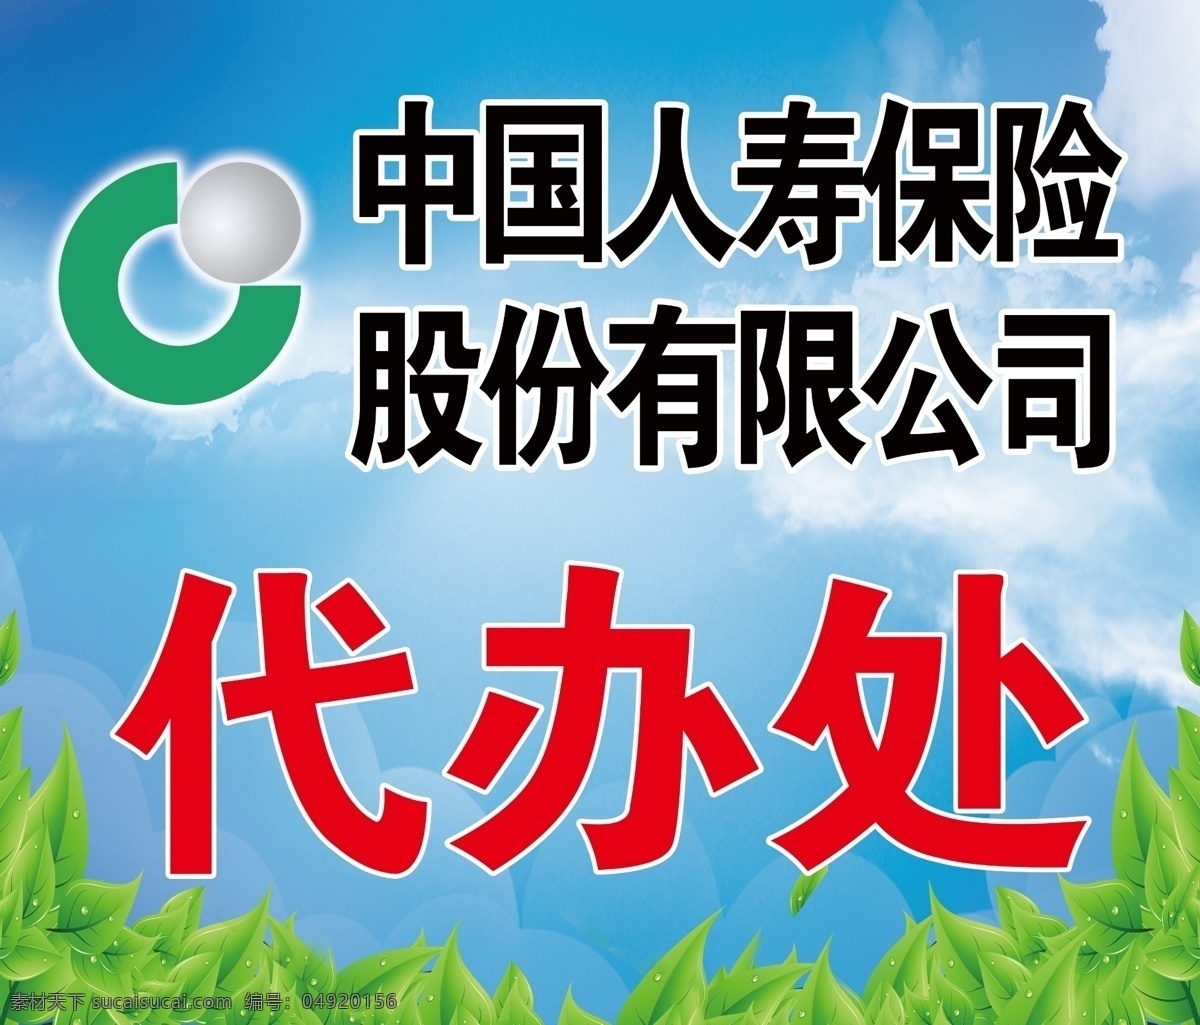 中国 人寿 代办处 喷绘 中国人寿 蓝色 背景 室外广告设计